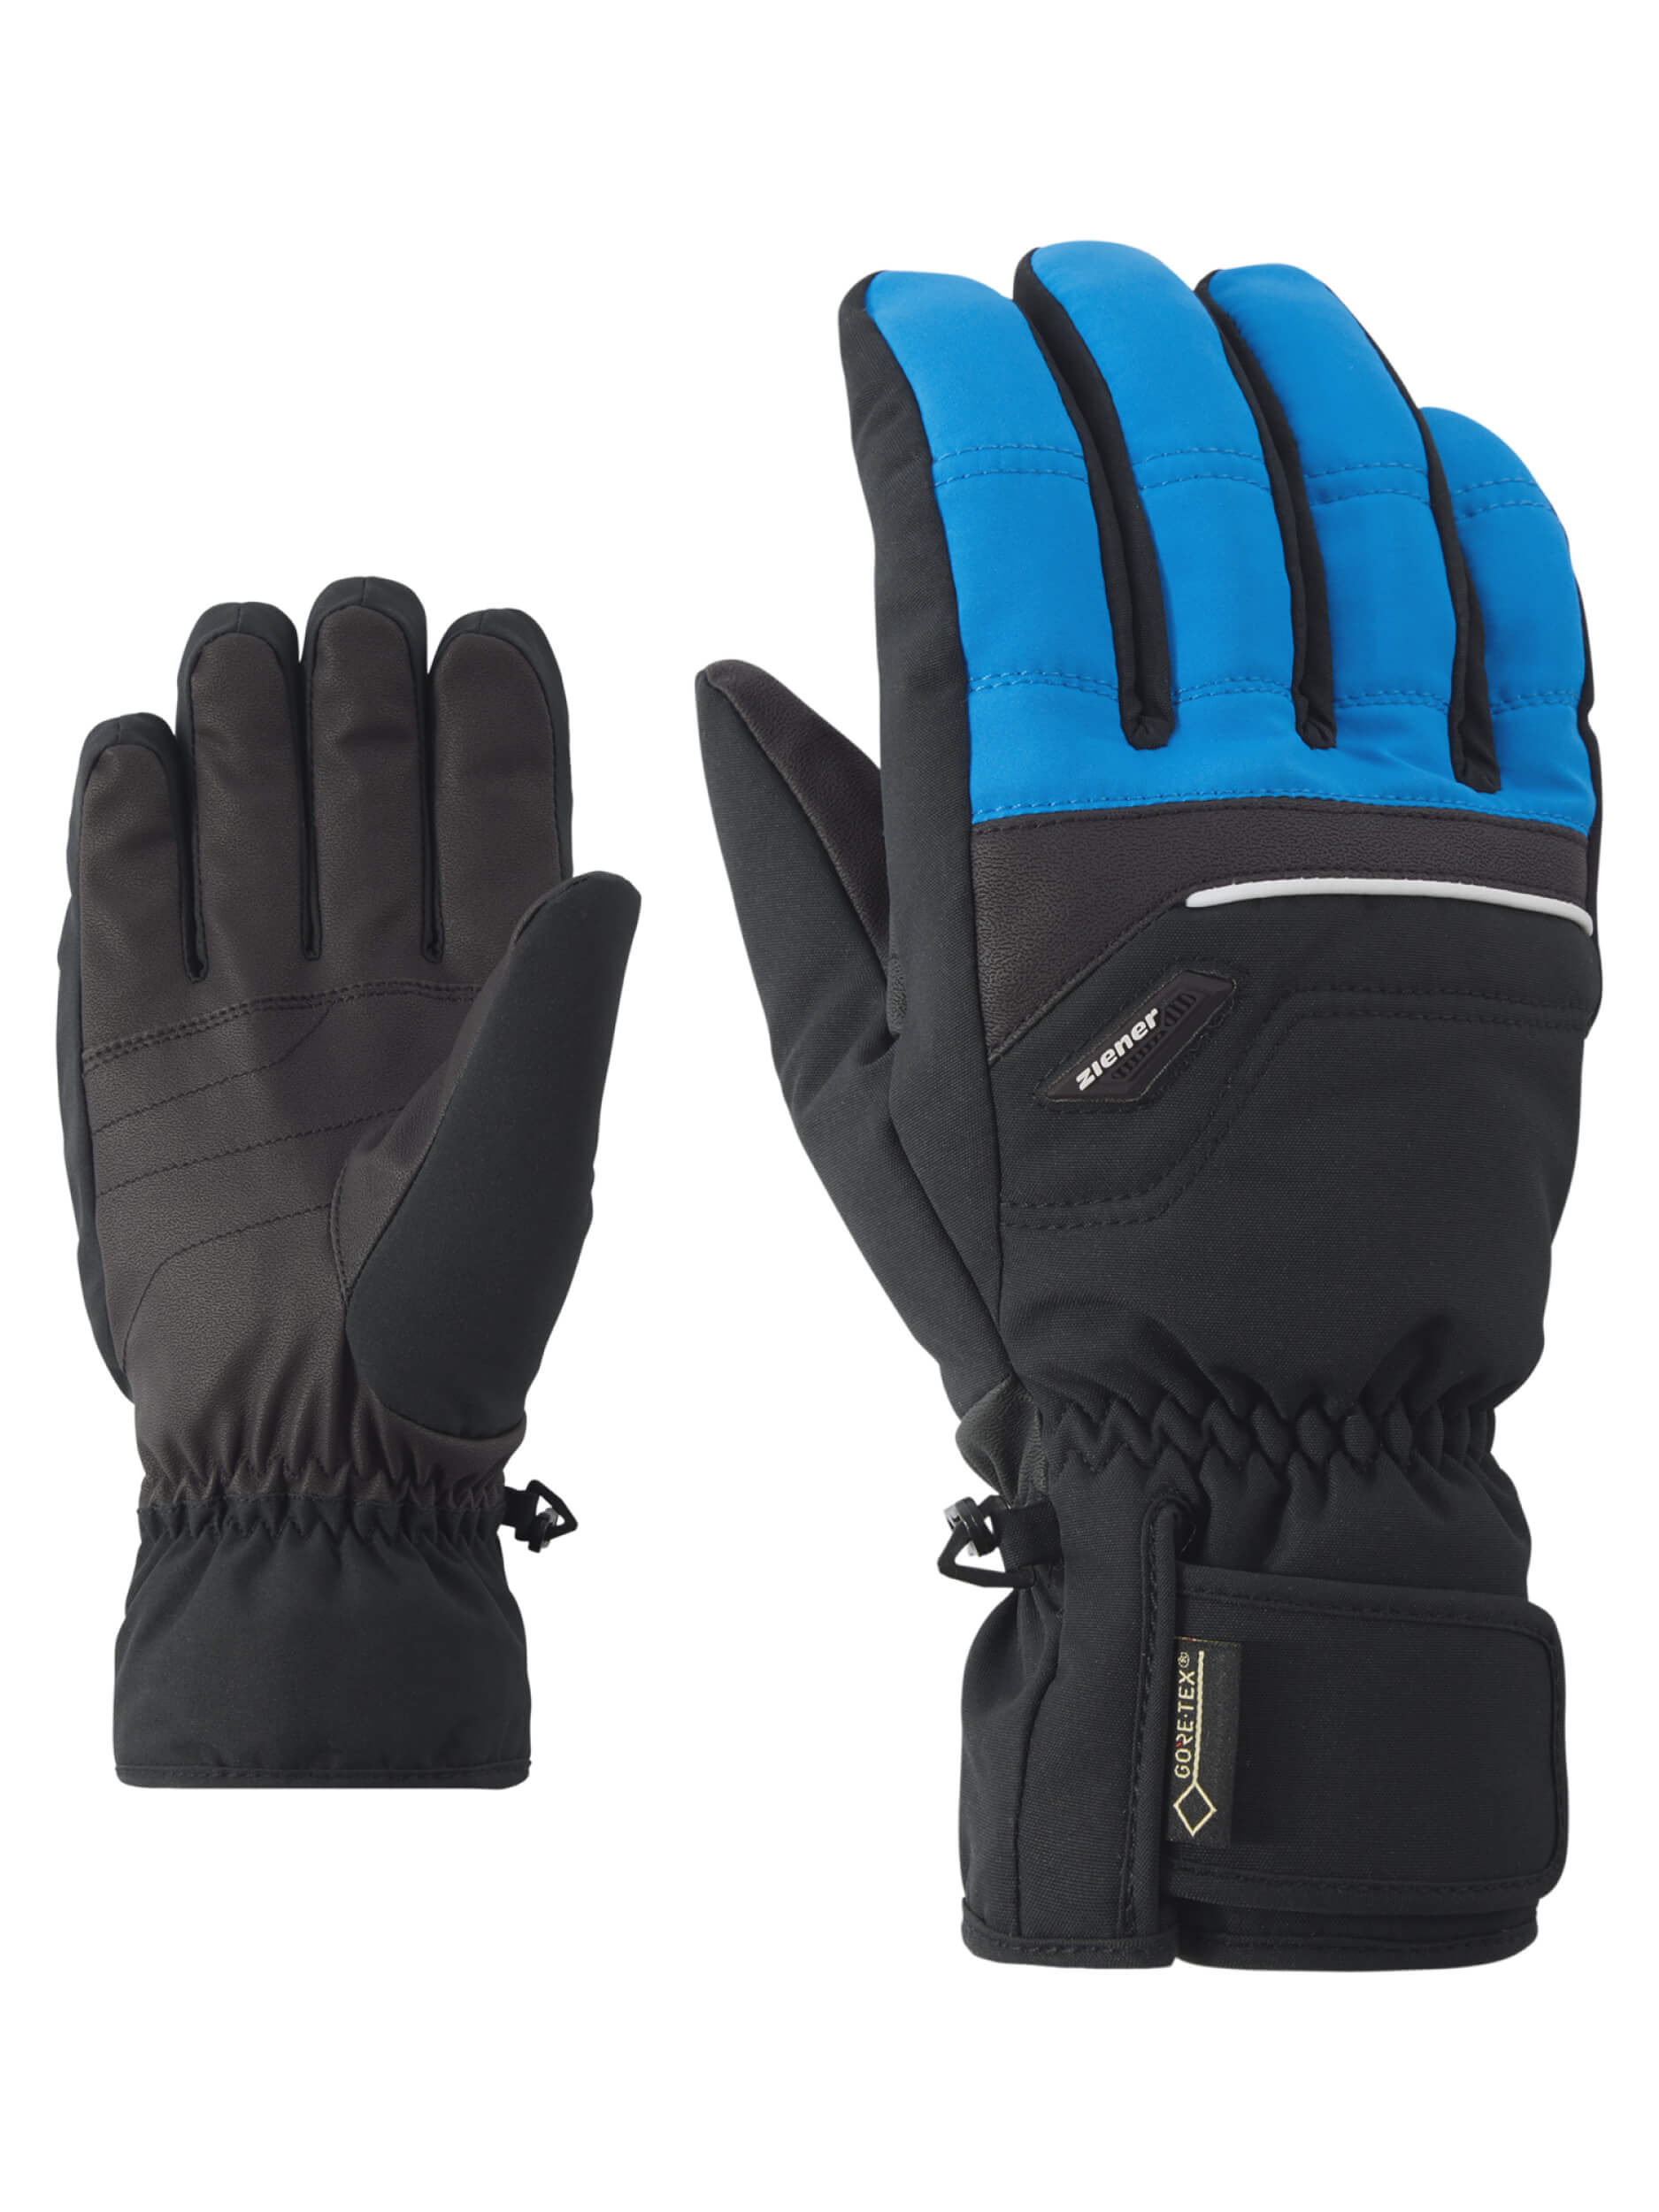 ZIENER Ski Handschuhe Glyn GORETEX schwarz blau 798